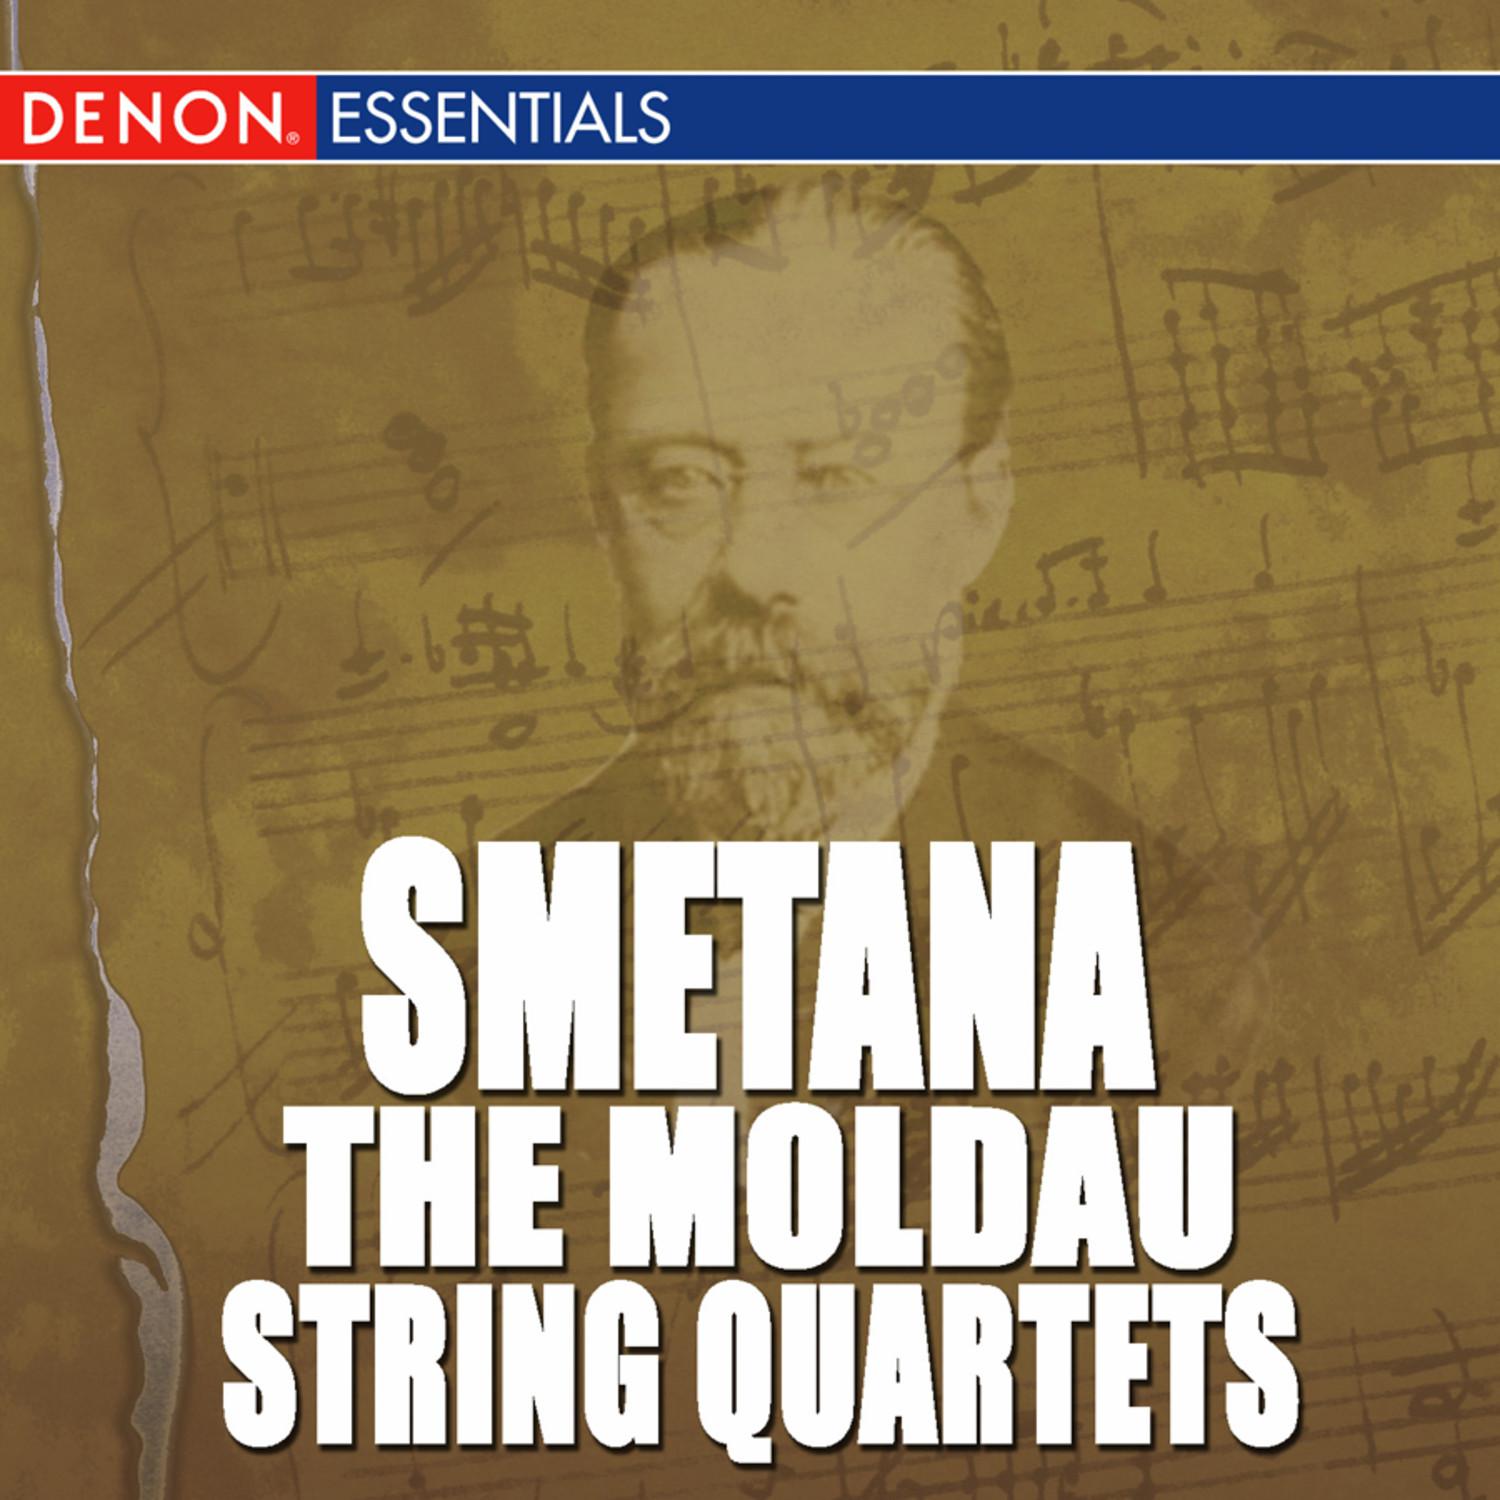 Quartet for Strings No. 2 in D Minor: II. Allegro moderato - Andante cantabile